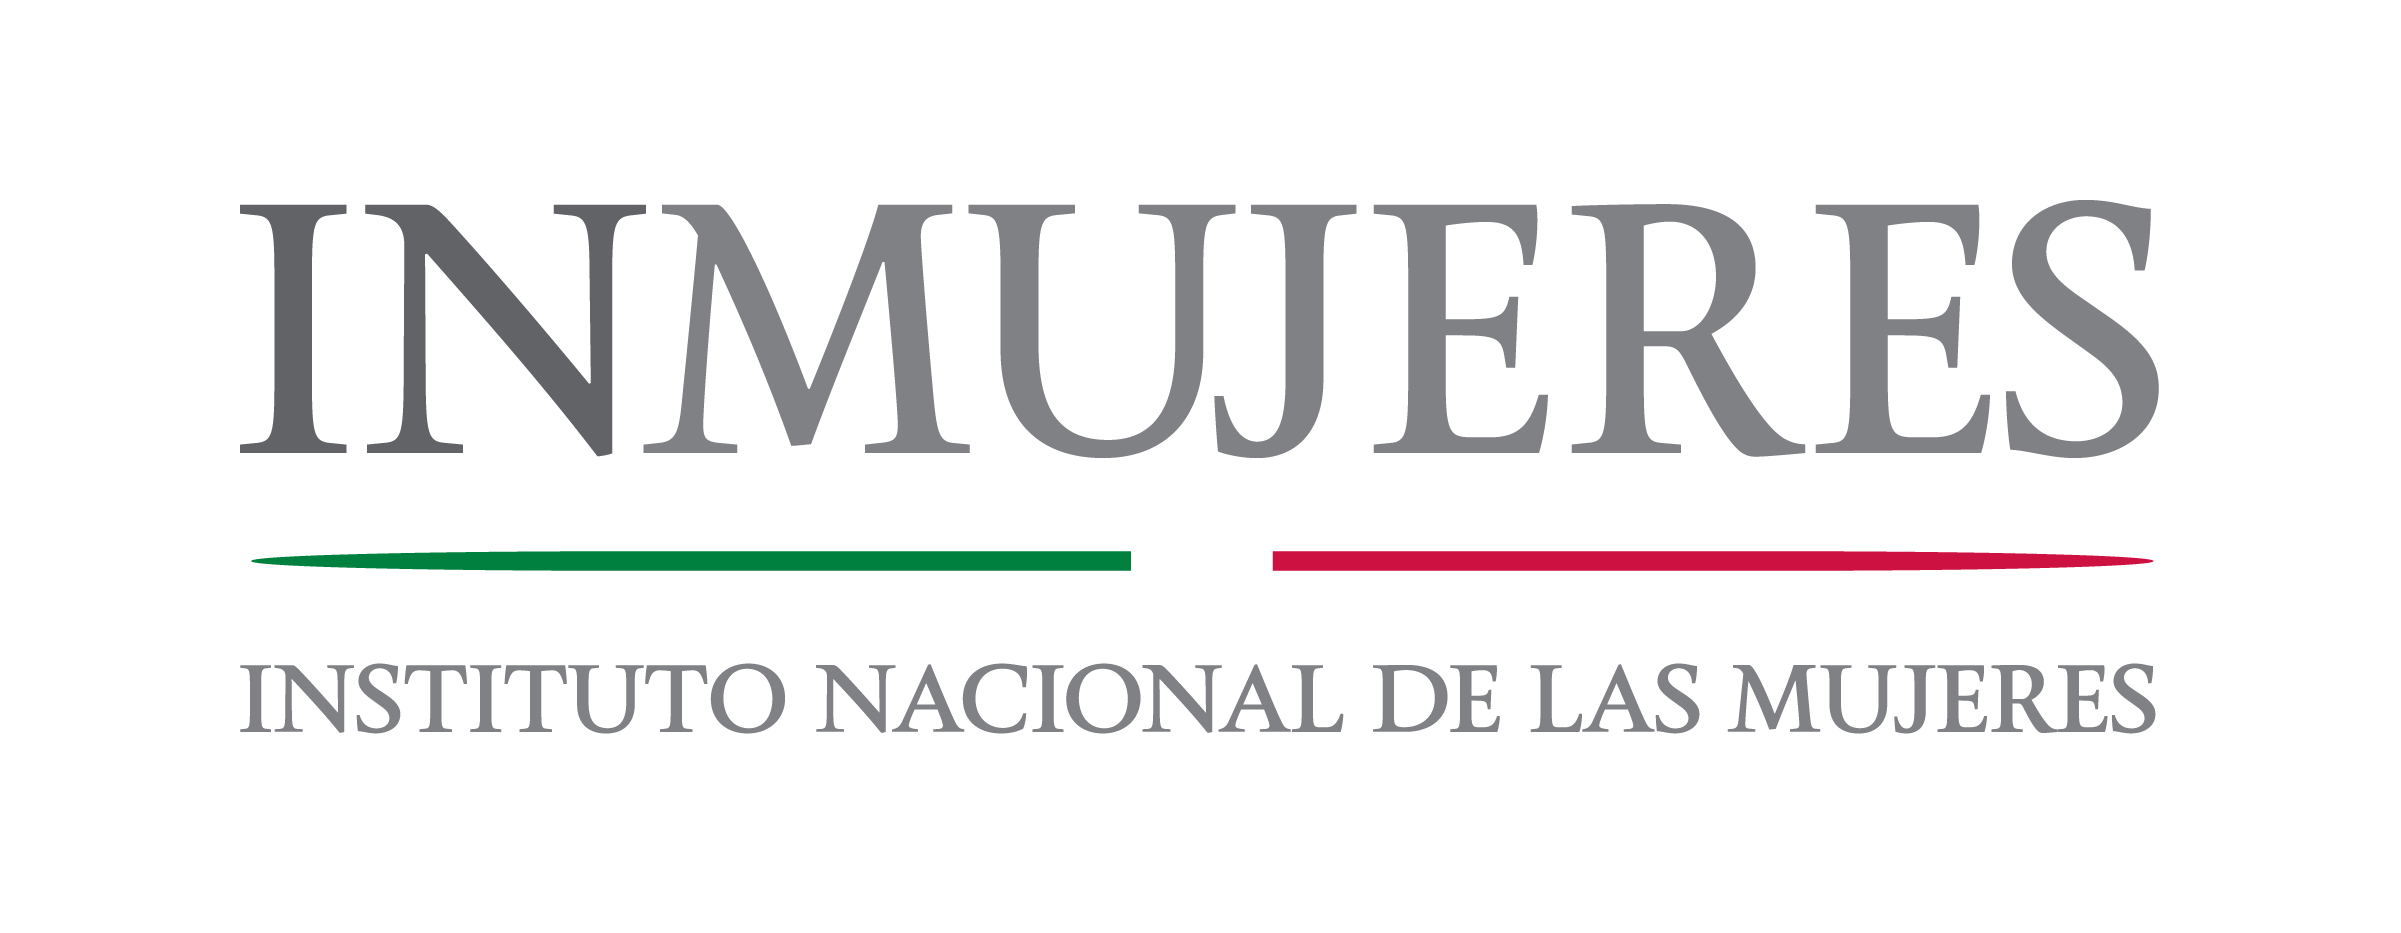 Logo del Instituo Nacional de las Mujeres (INMUJERES)